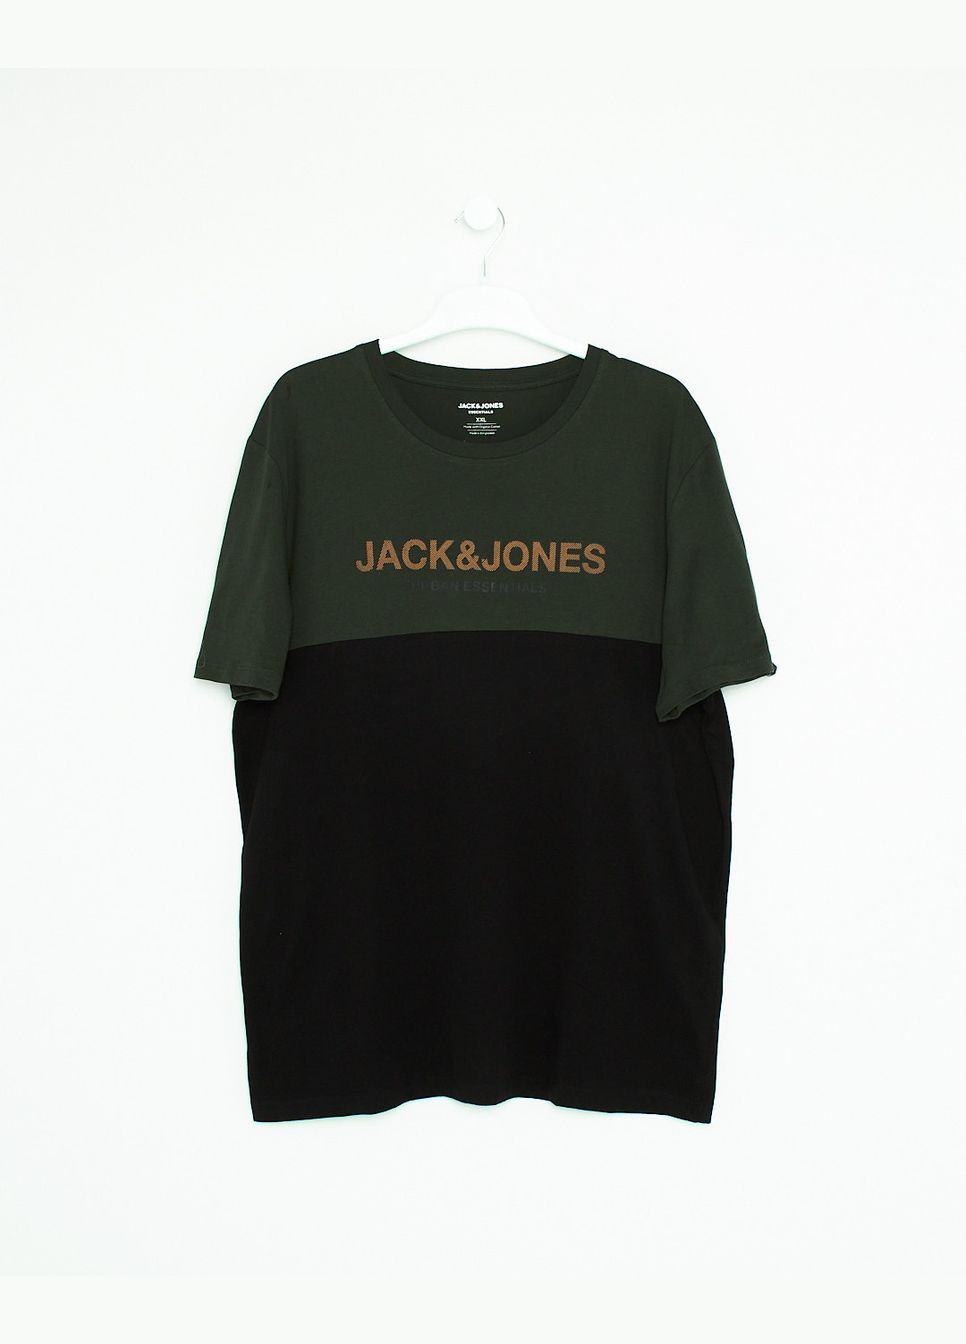 Черная футболка,черный-хаки,jack&jones Jack & Jones